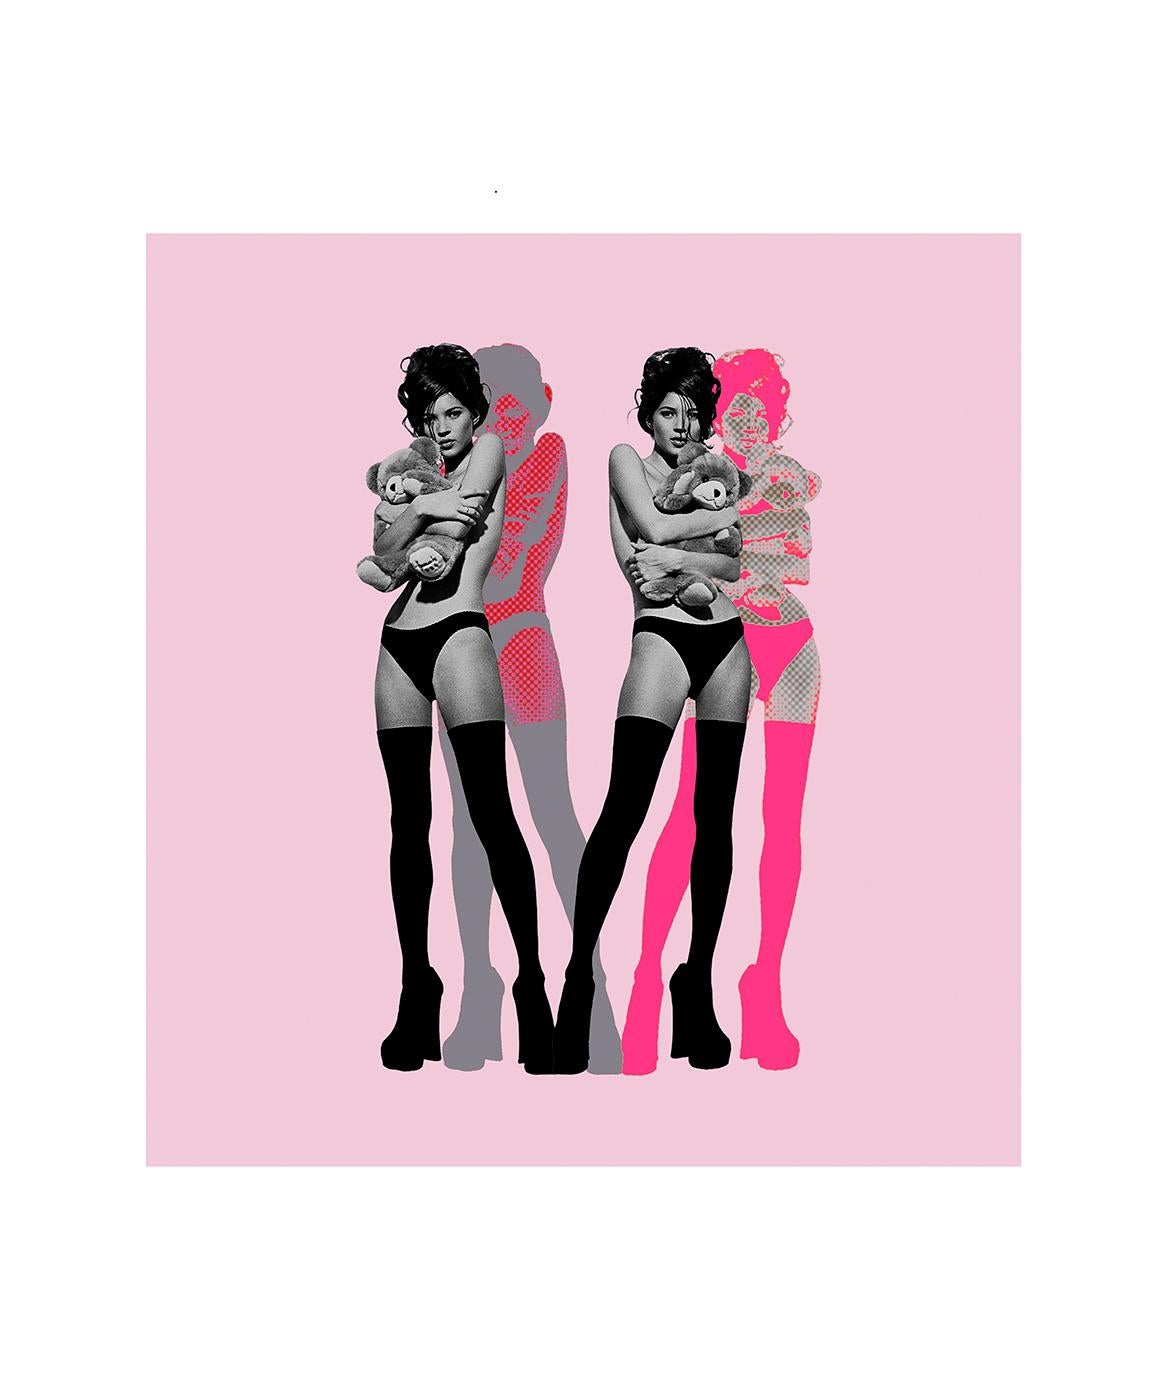 "Twin Kate Moss on Pink" Photographie 40 x 36,5 en édition de 25 par Kate Garner

Papier d'archives fine art Hahnemuhle

Kate Garner : Chercheuse, Sage, et Préservatrice de l'identité

Une sélection réfléchie des travaux les plus importants de Kate